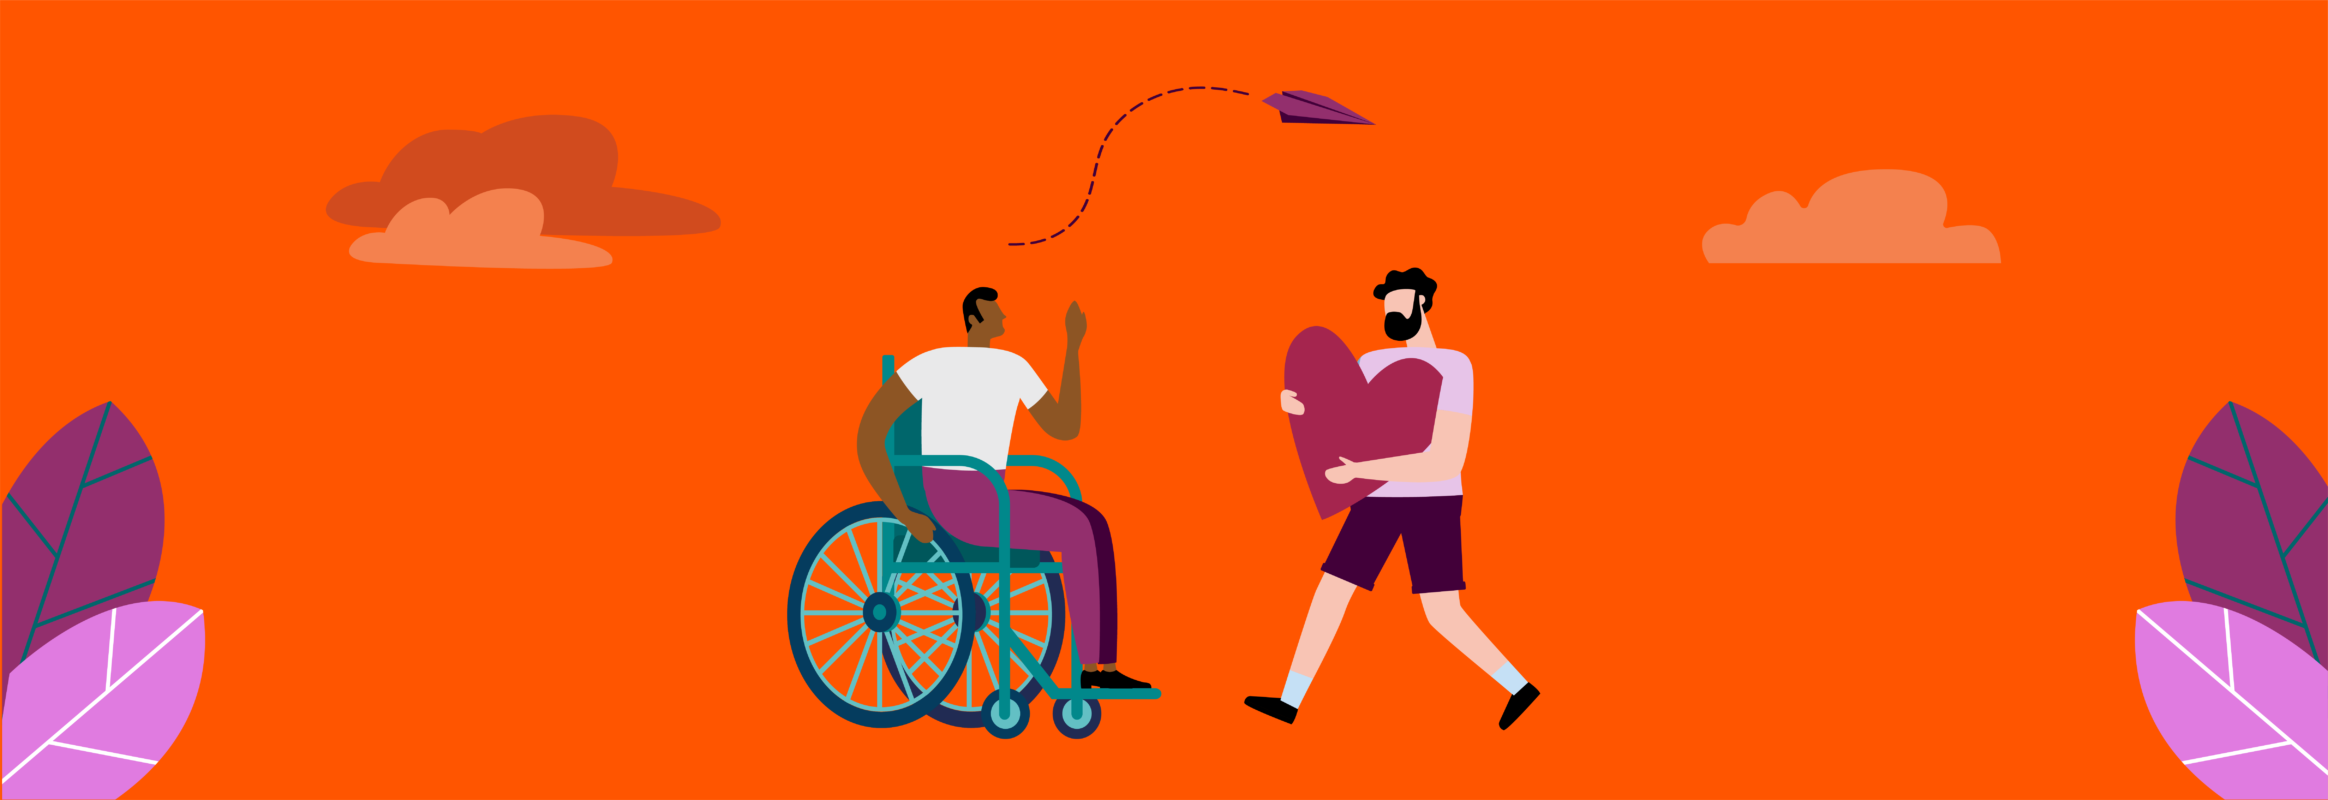 Illustration montrant une personne en fauteuil roulant et une autre personne debout portant un coeur, se faisant face.